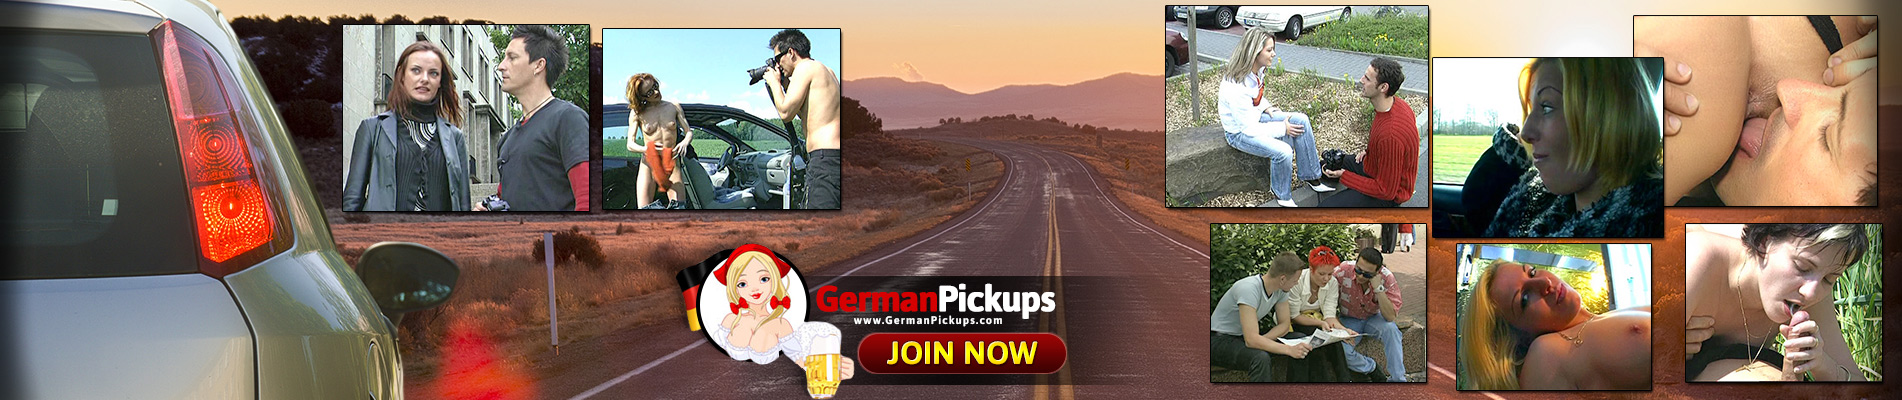 Germanpickups.com